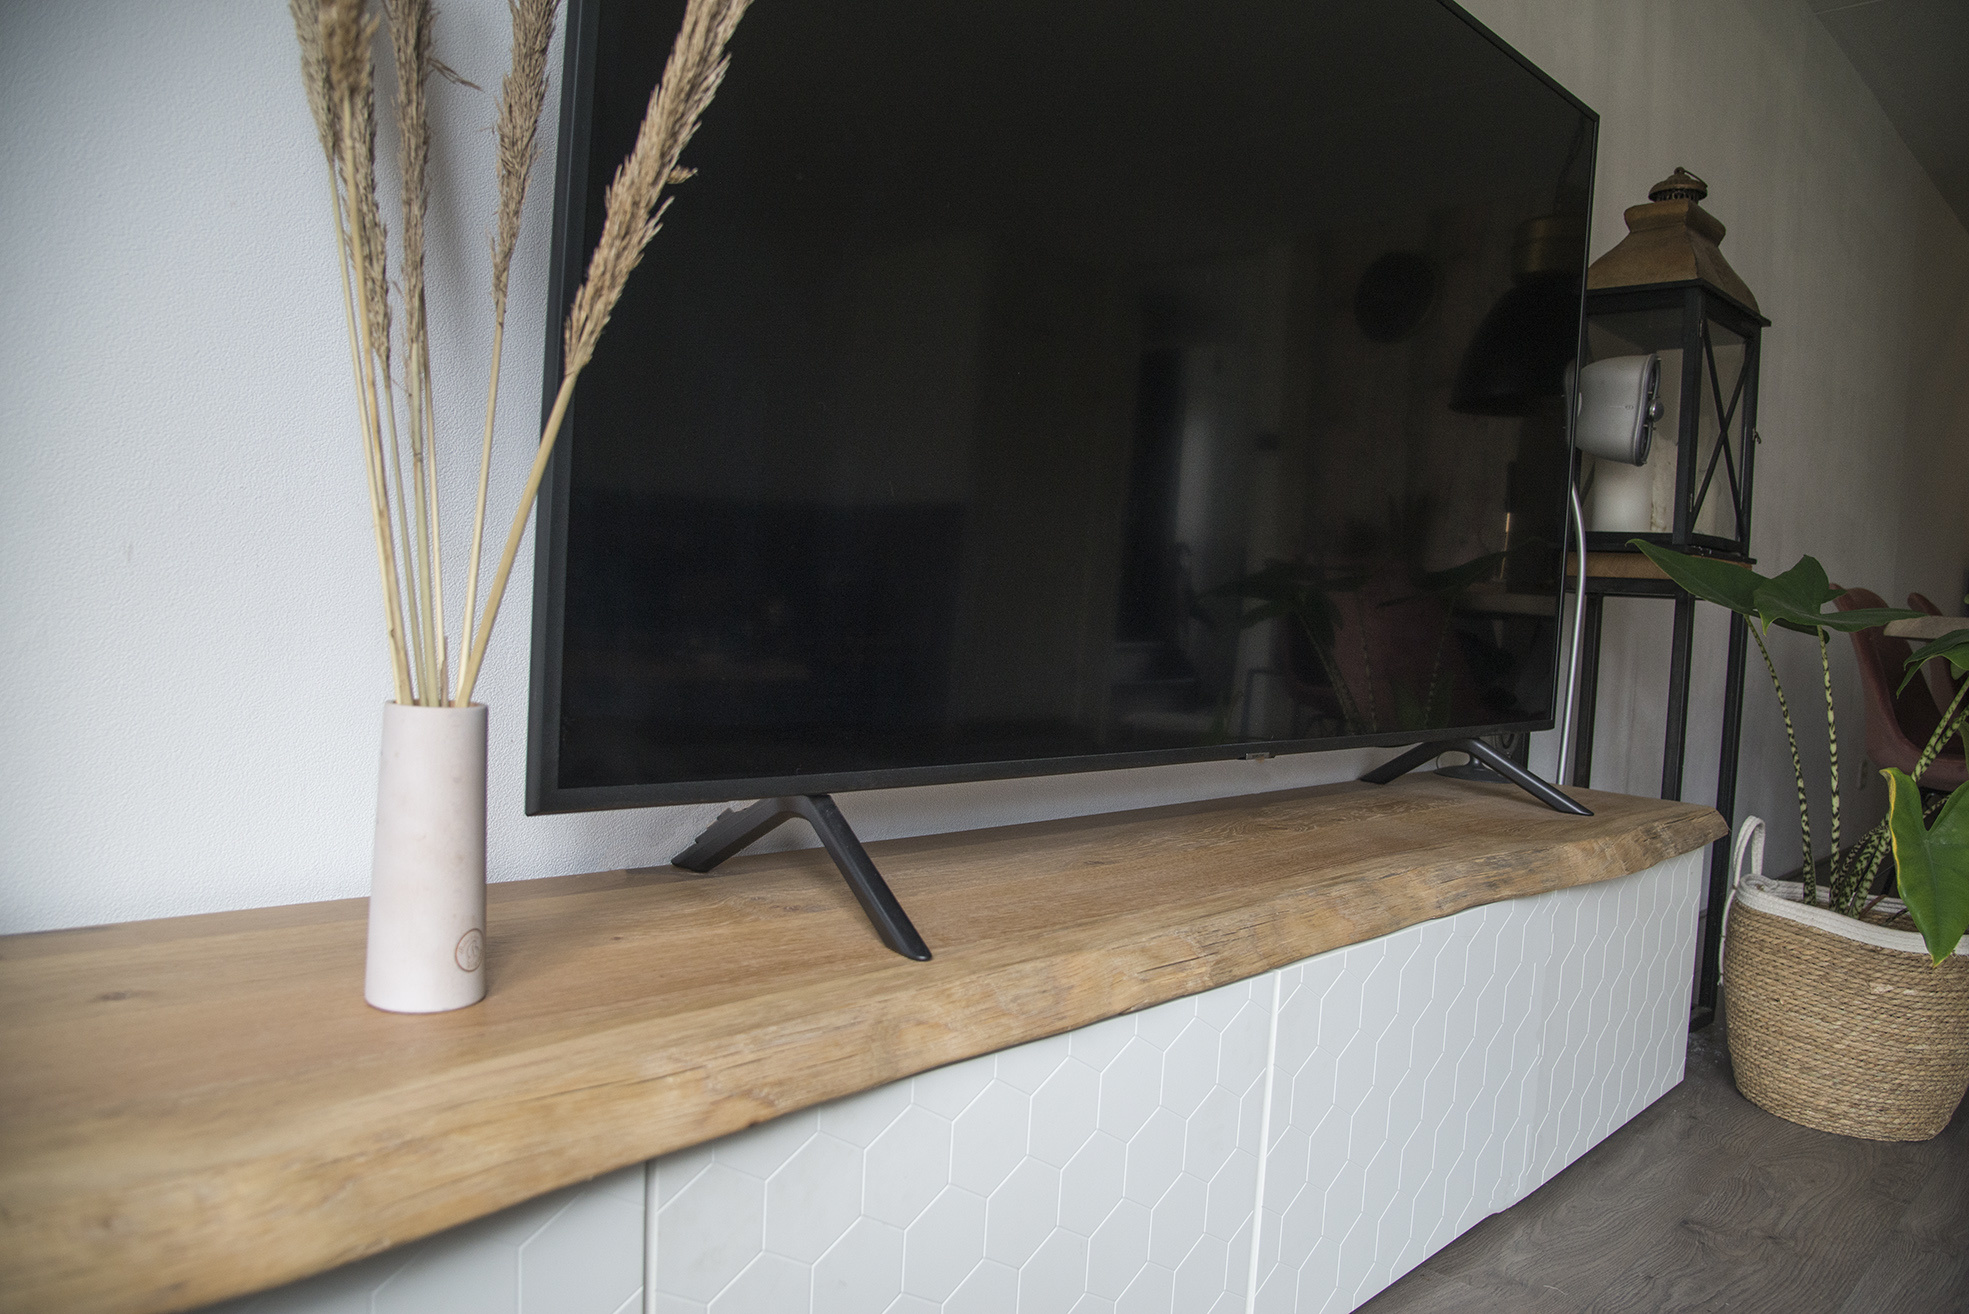 Voetganger comfortabel Honderd jaar Houten plank op een Besta TV-meubel - Boomstam-tafels